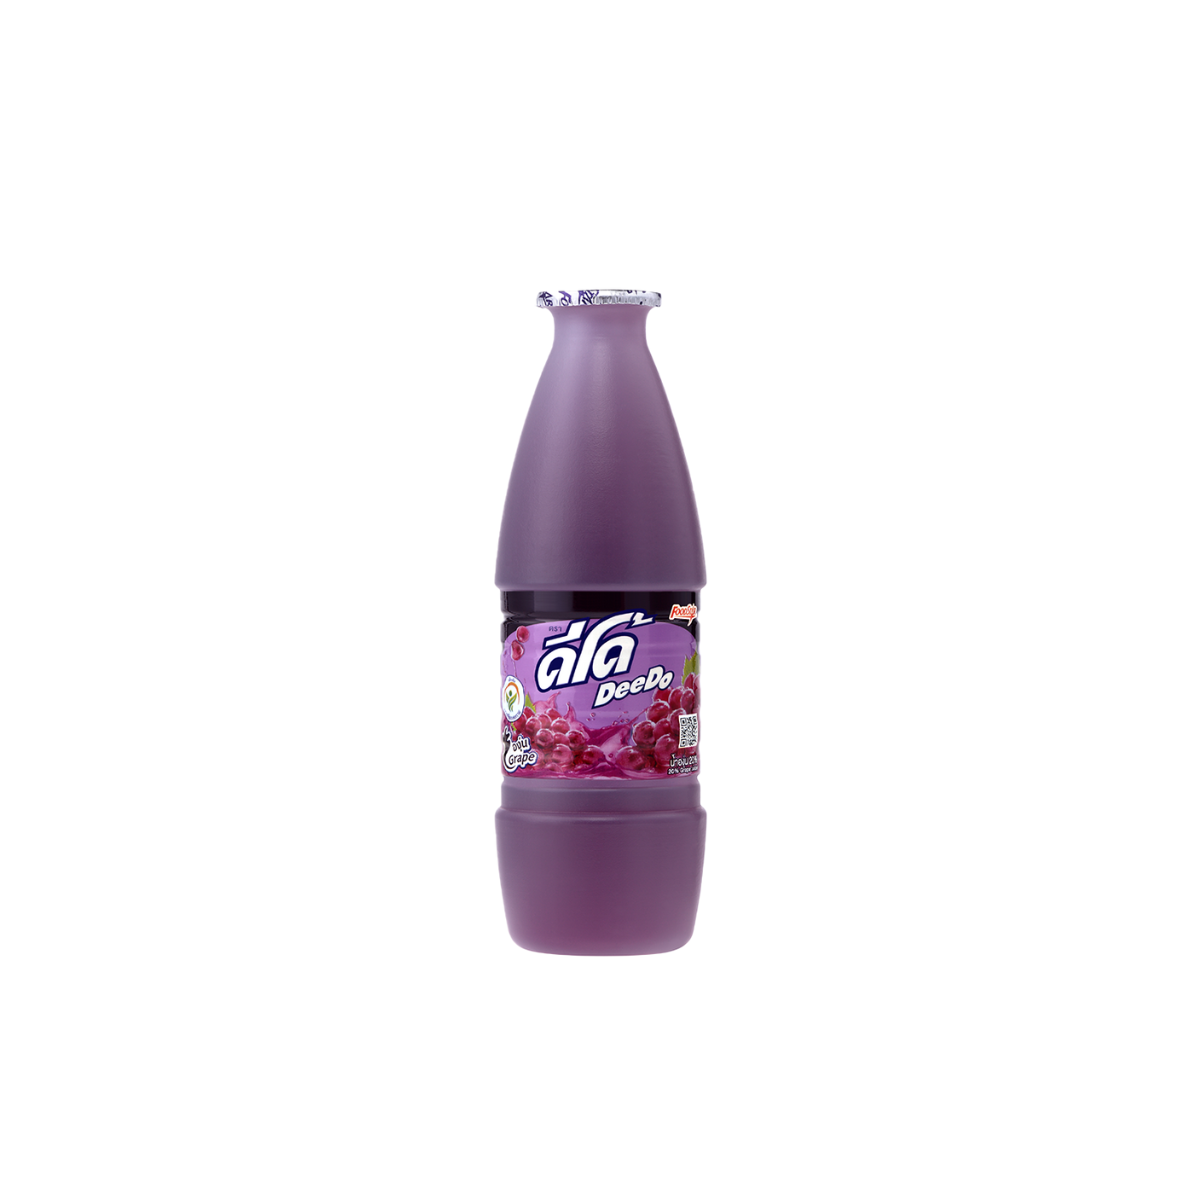 Deedo Grape Juice - 300 ml